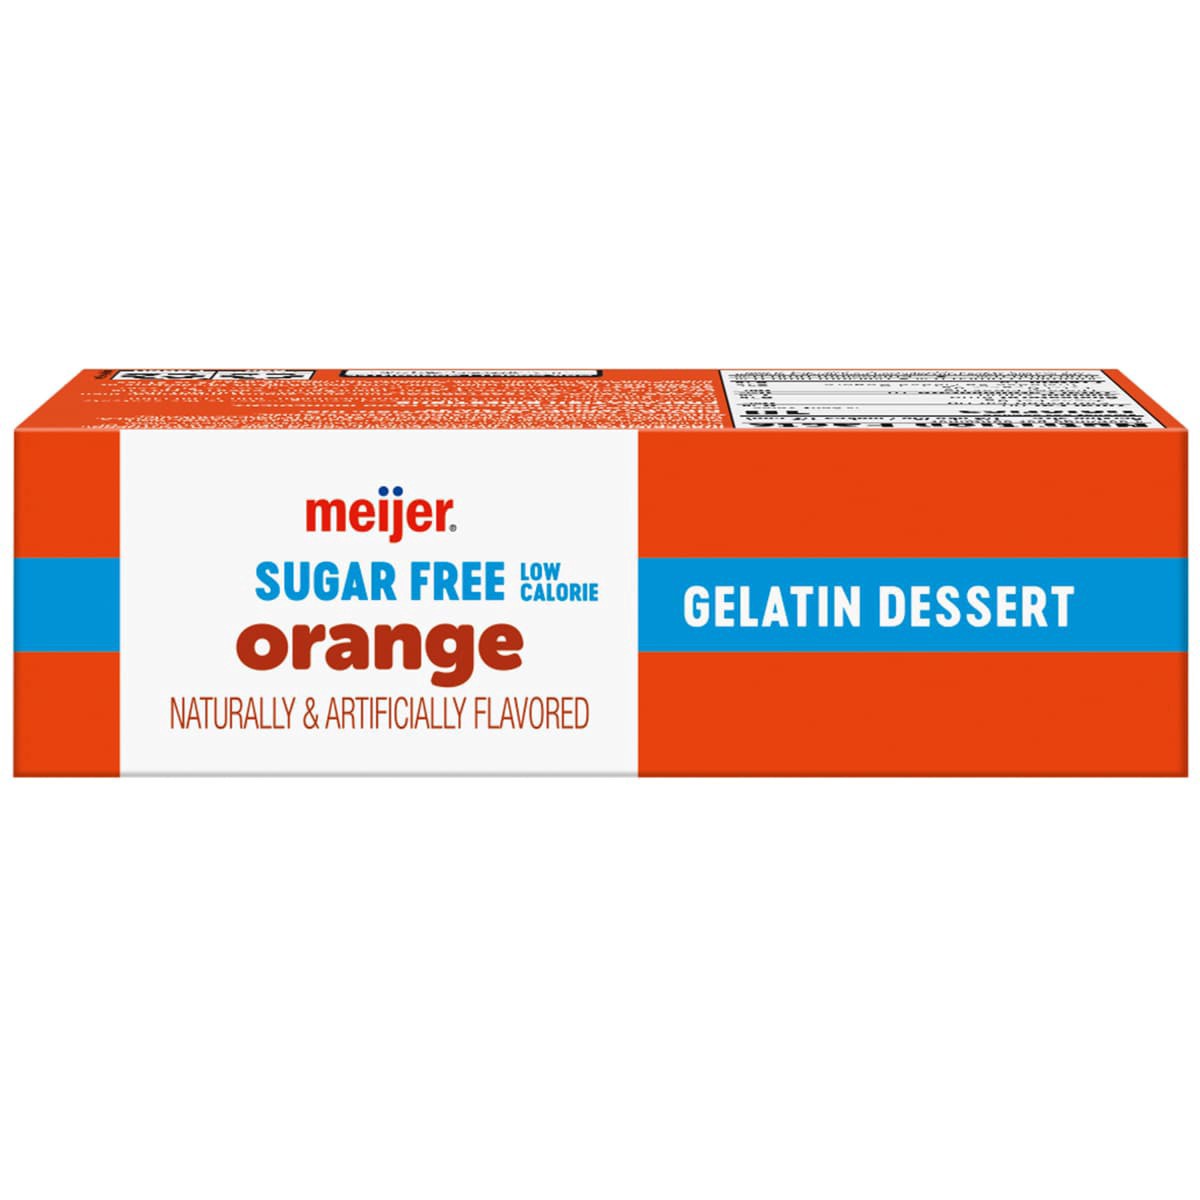 slide 17 of 29, Meijer Sugar Free Orange Dessert Gelatin, 0.44 oz